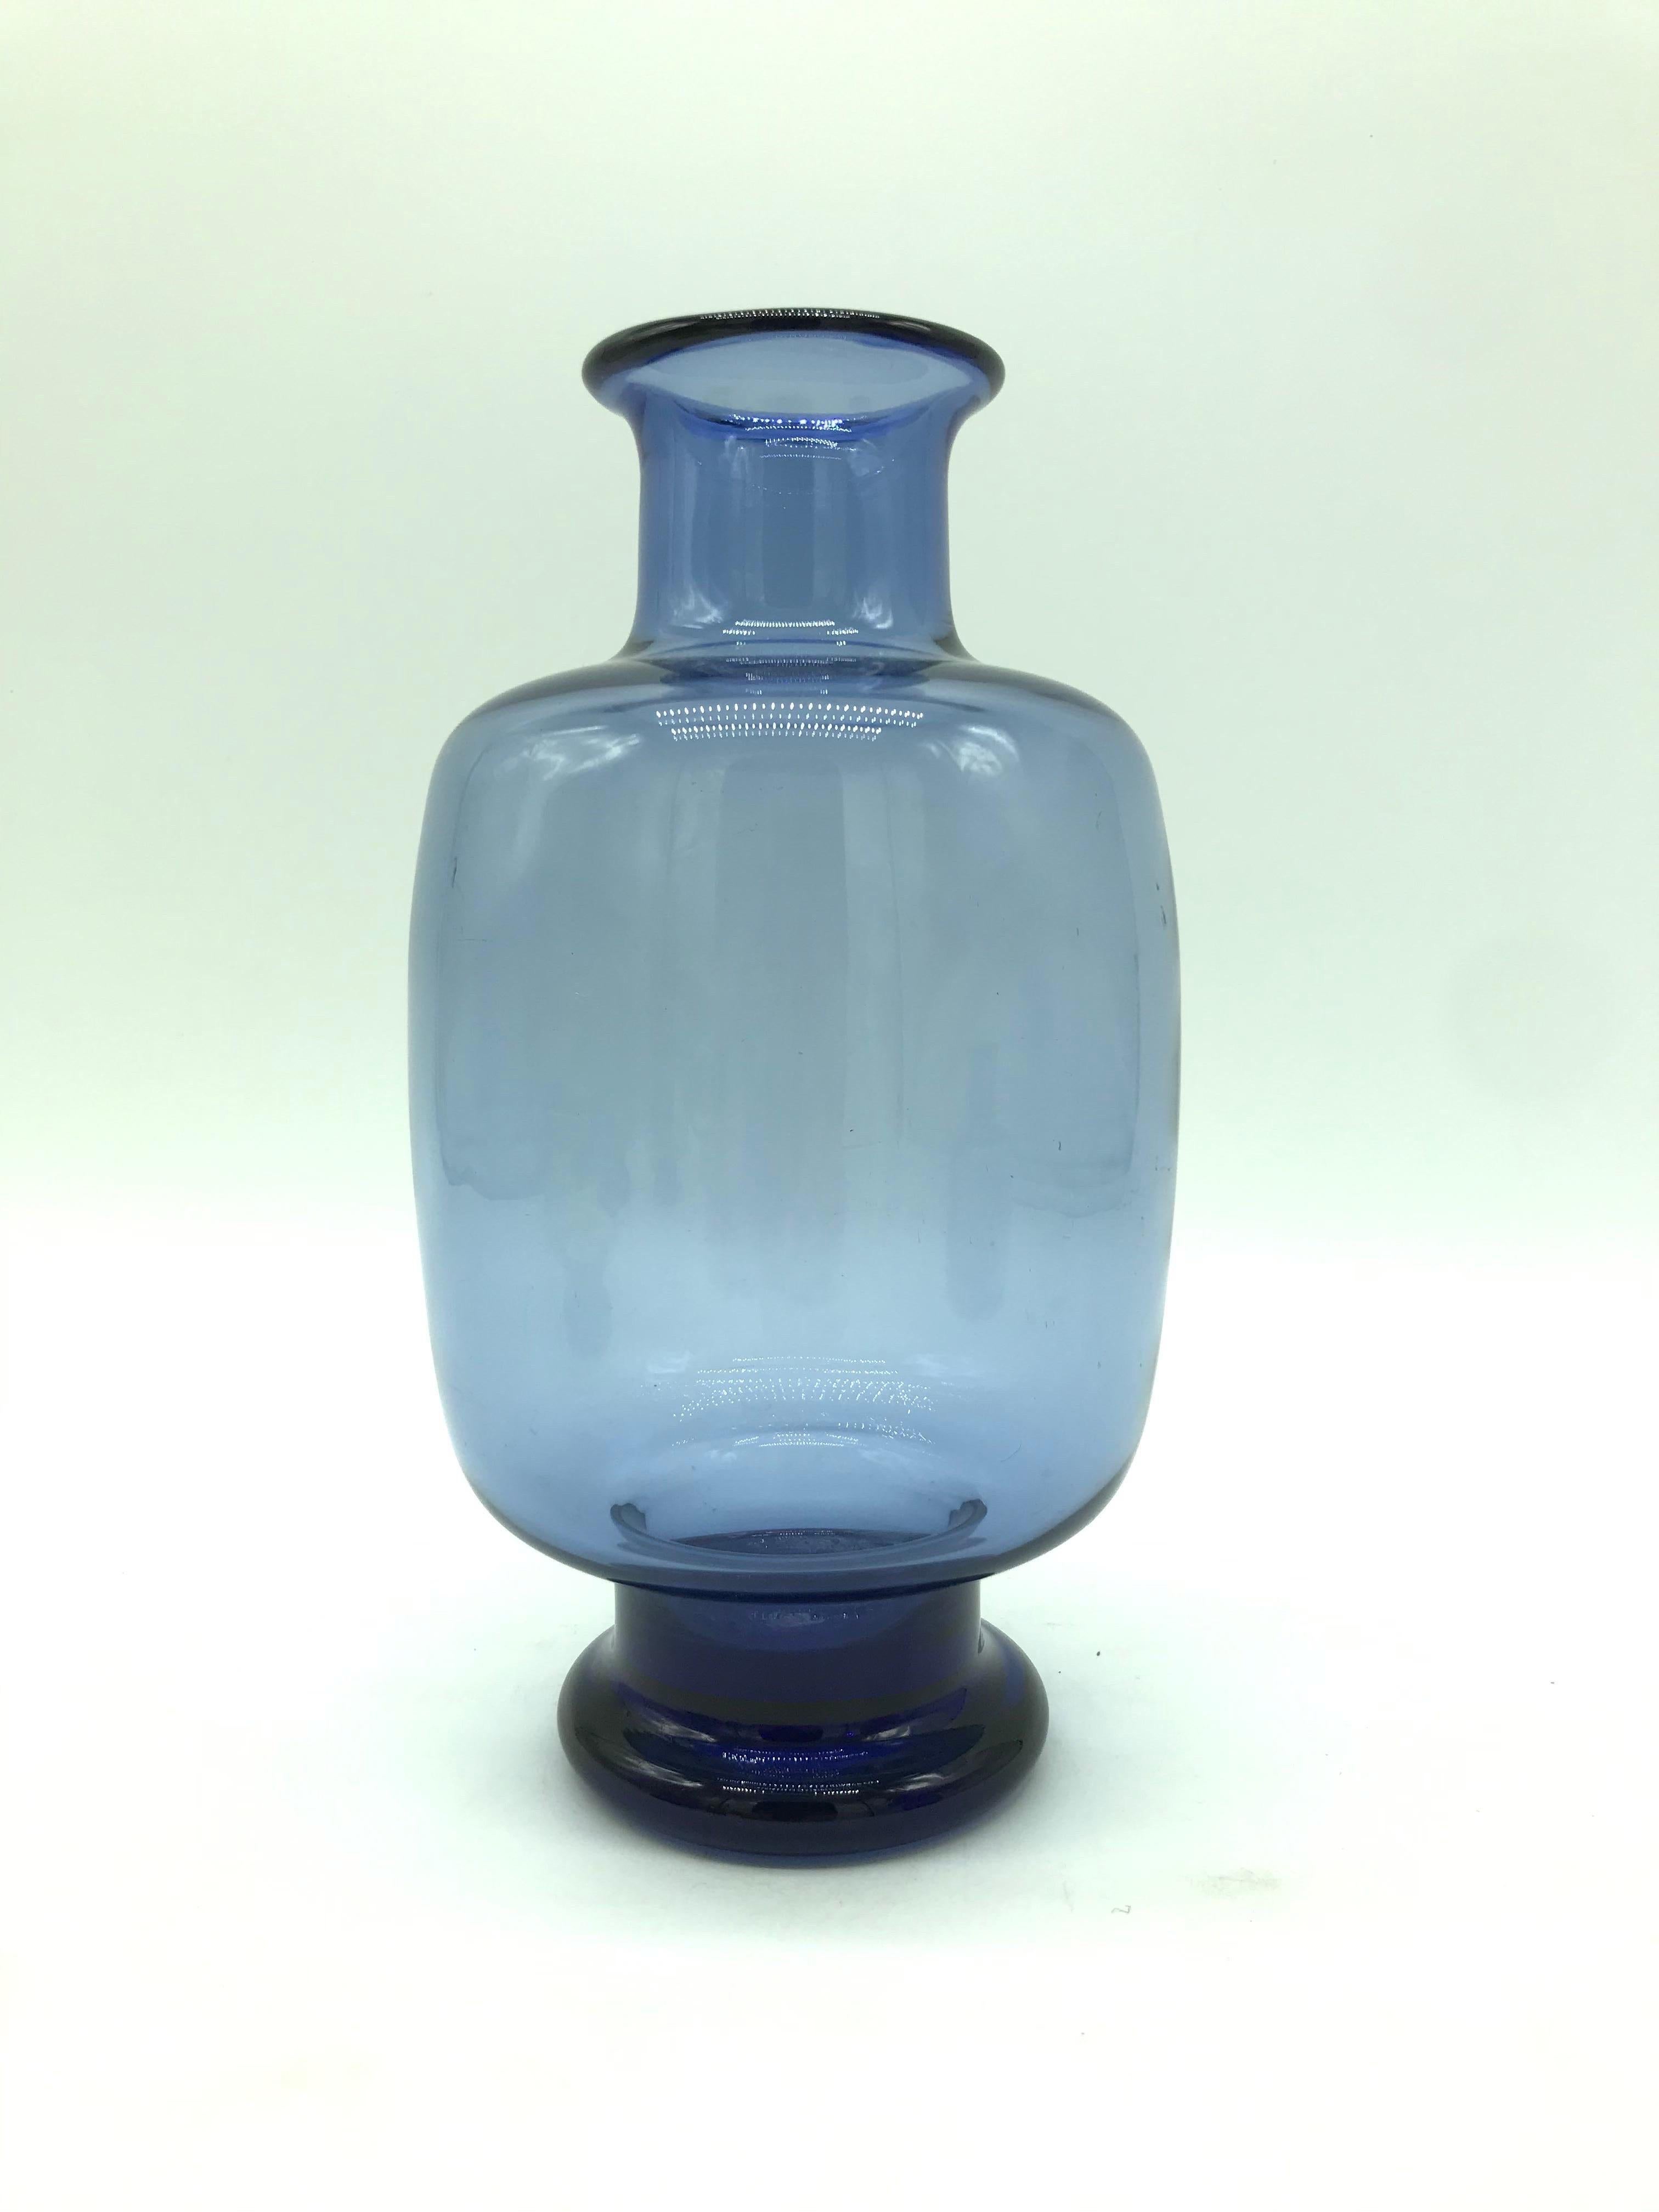 Un ensemble rare de vases vintage Royal Copenhagen conçus par Per Lutkin pour Holmegaard dans un beau verre soufflé à la main teinté vert et bleu.
Tous signés et gravés.
Per Lütken était un verrier danois, surtout connu pour ses travaux à la